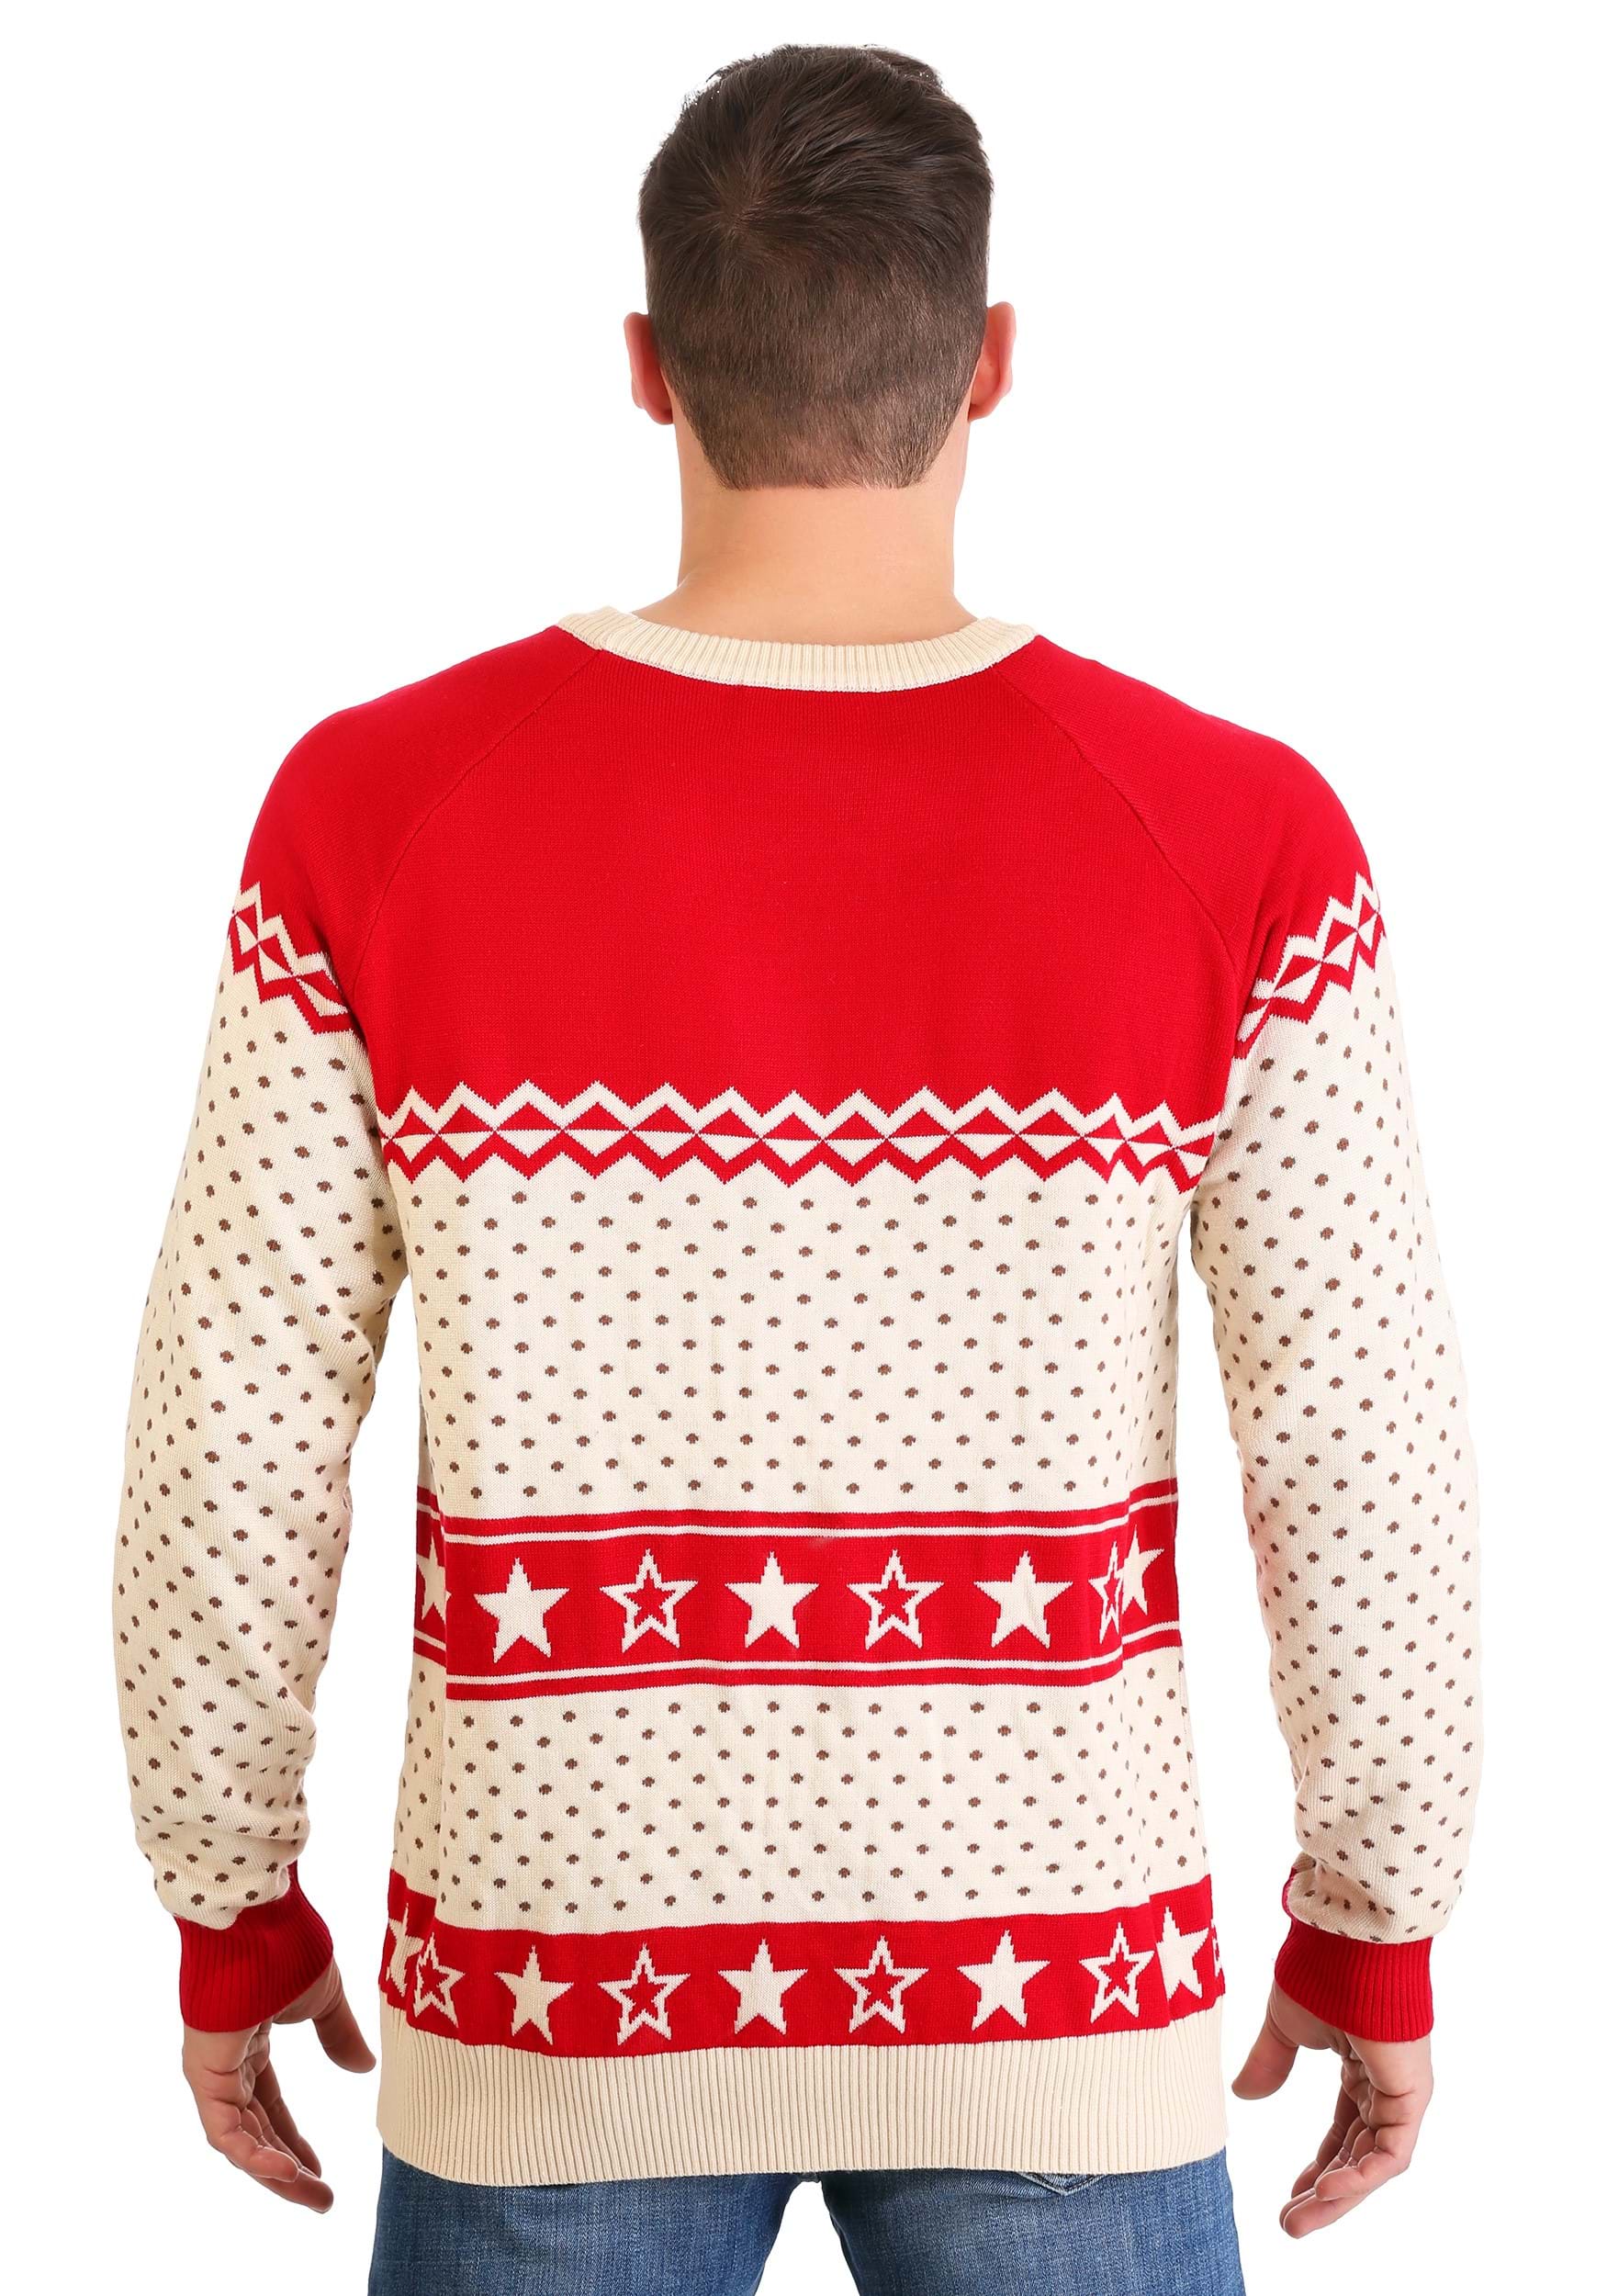 Christmas Sloth Ugly Sweater , Christmas Sweater